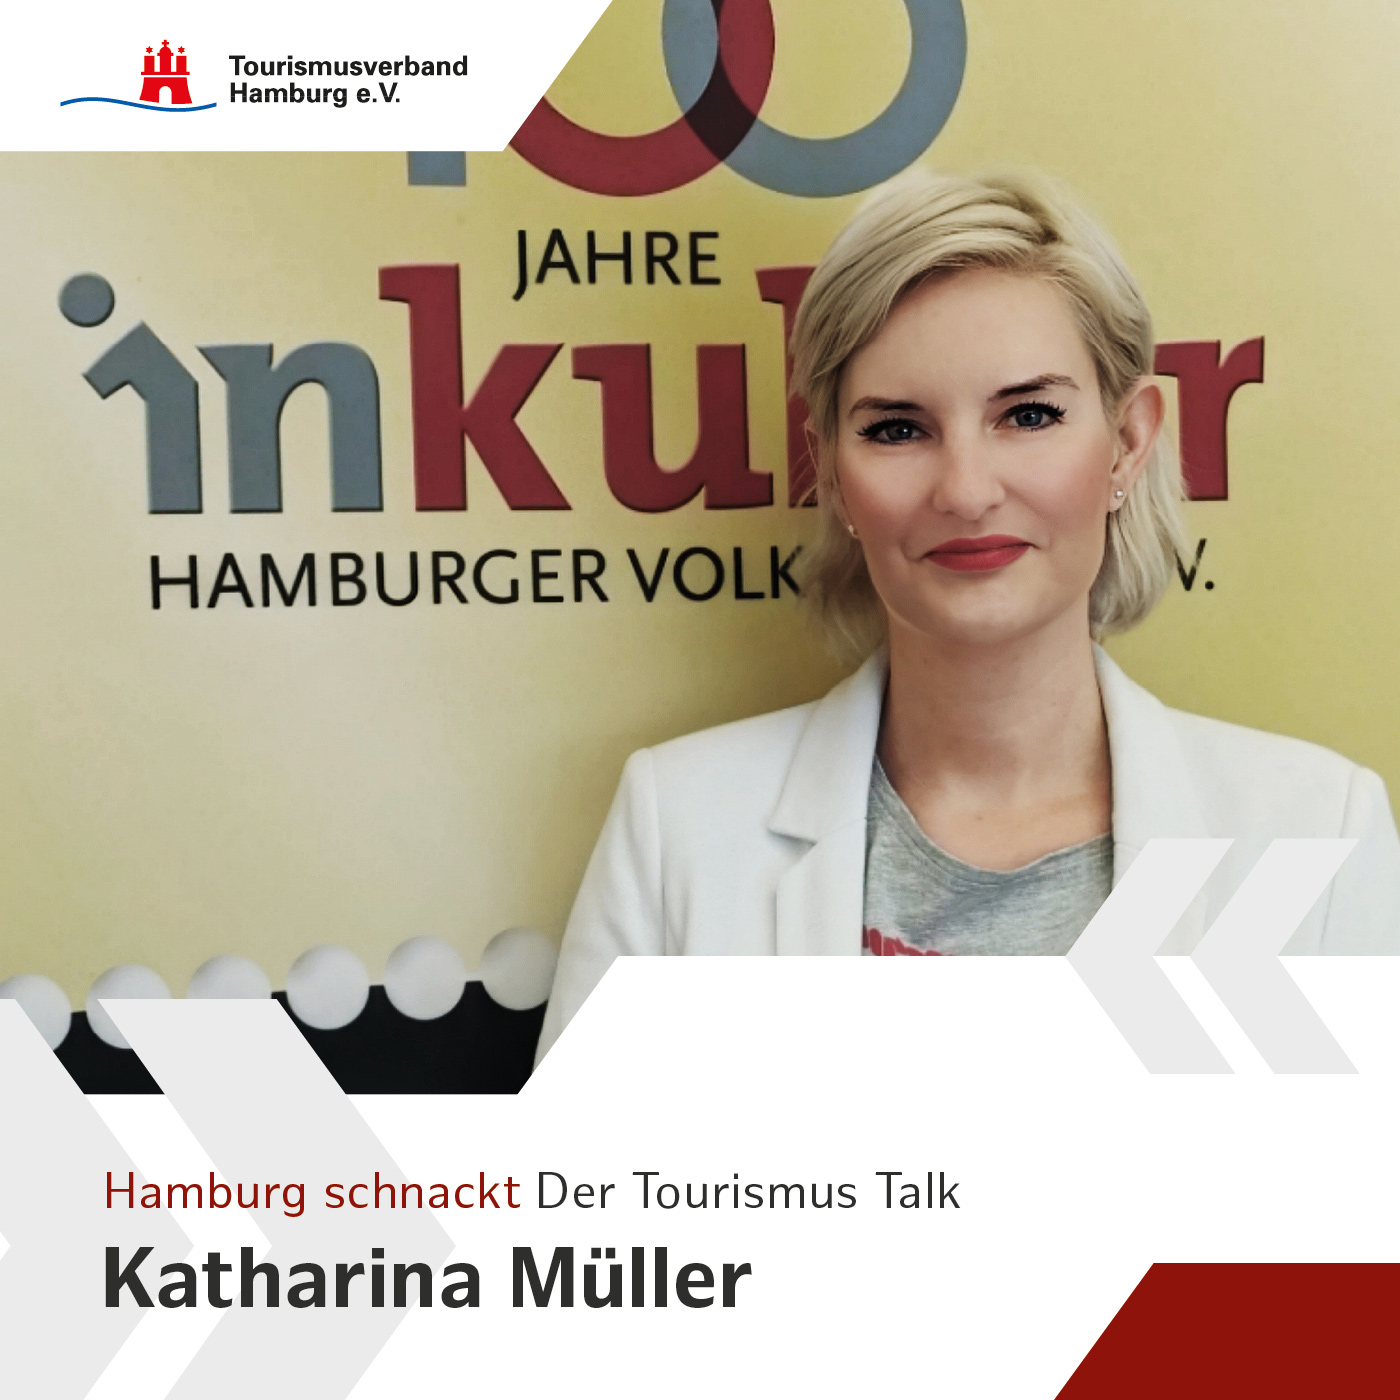 Hamburg schnackt mit Katharina Müller